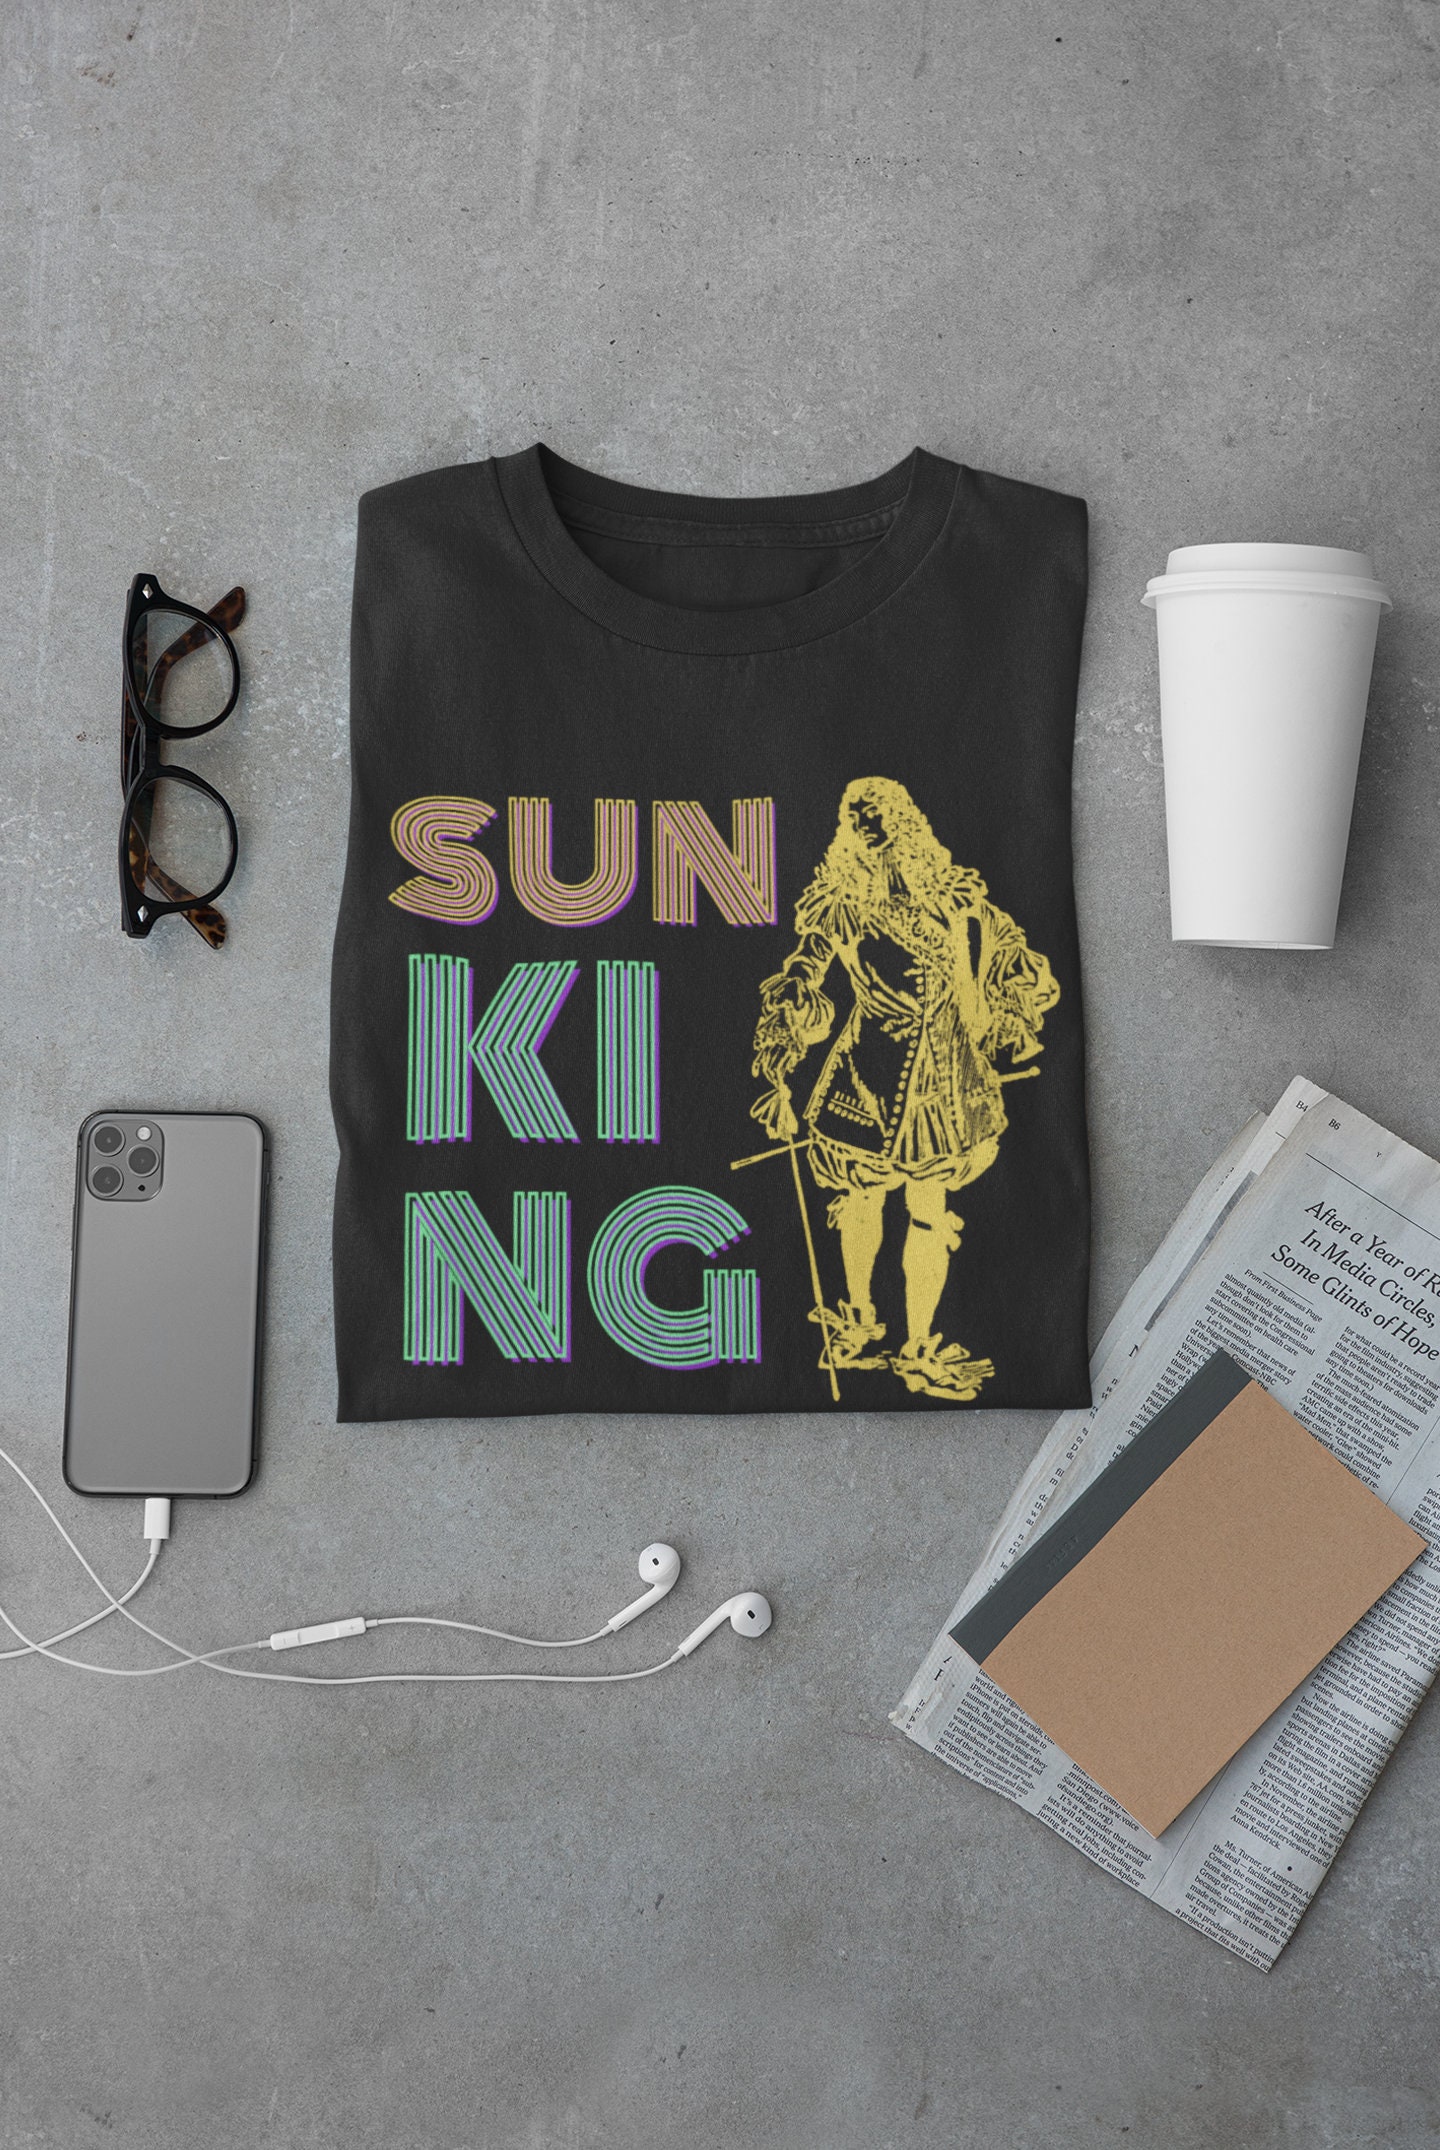 Fun Summer Retro History T-shirt. Sun King. Louis XIV. 